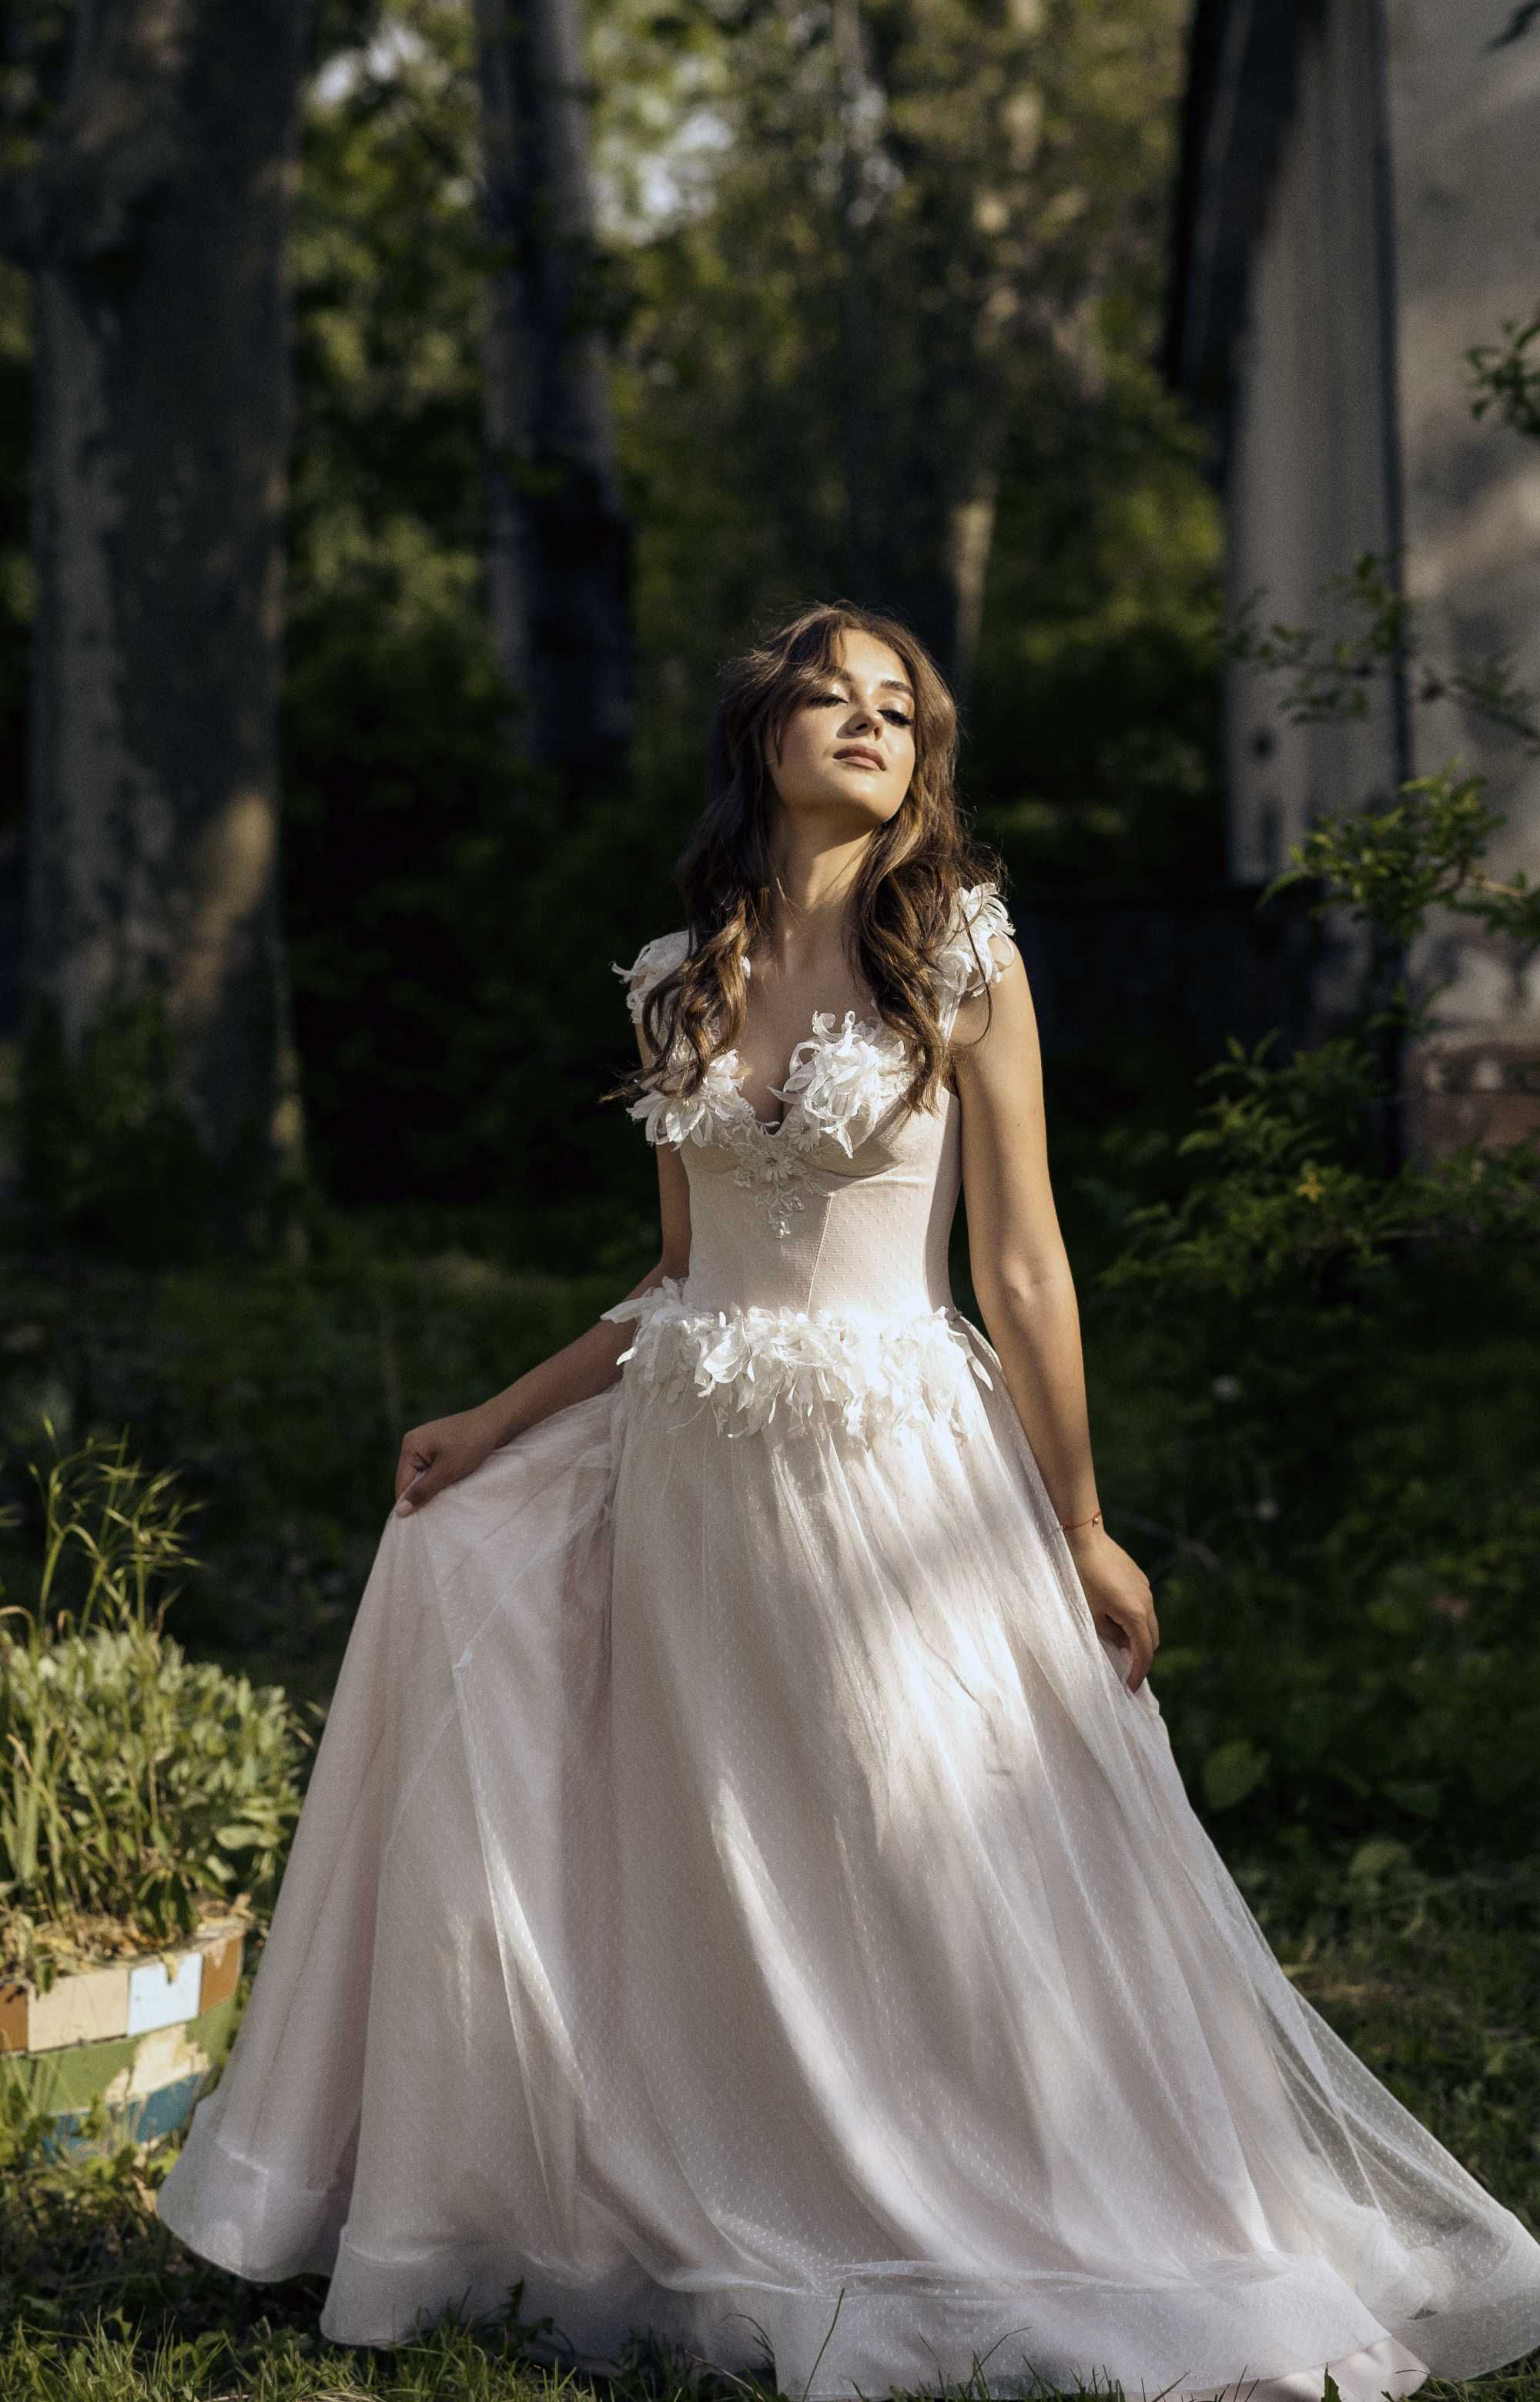 Ексклюзивна Весільня Сукня в Одесі (Свадебное платье в Одессе)